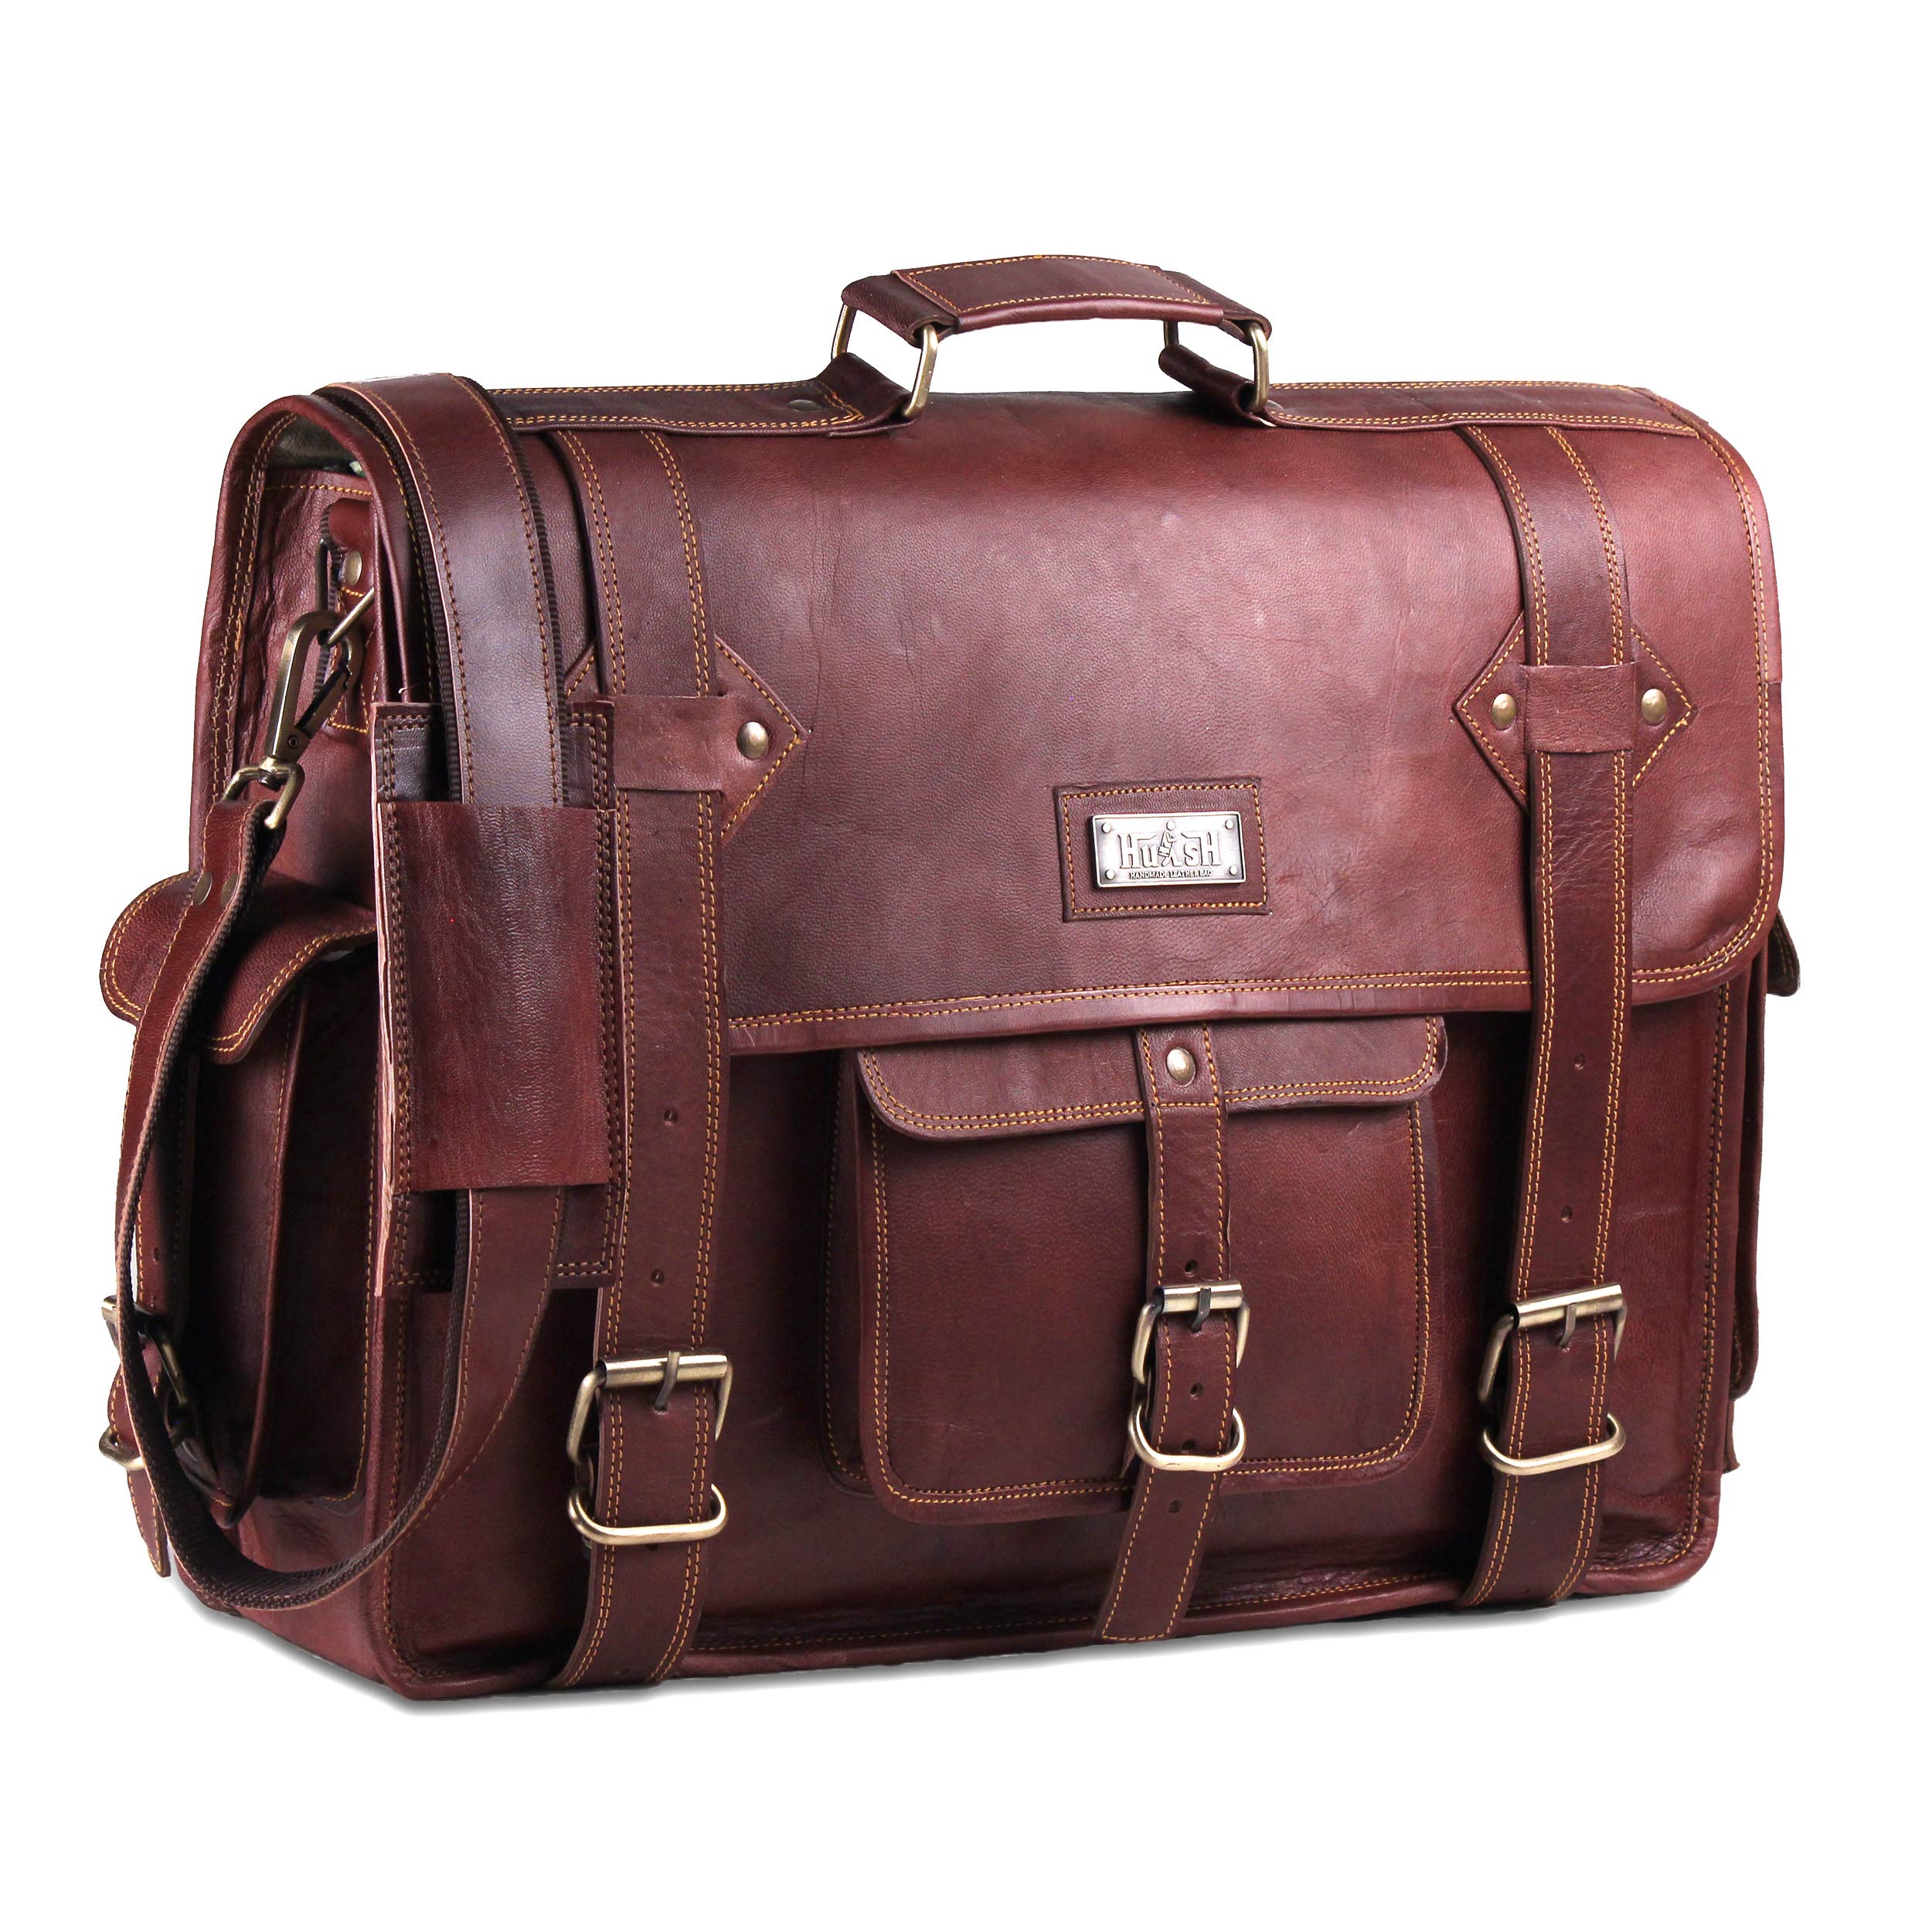 HULSH Leather Messenger Bag for Men – Vintage Laptop Bag Leather Satchel for Men - 18 inch Padded Brown Leather Computer Bag